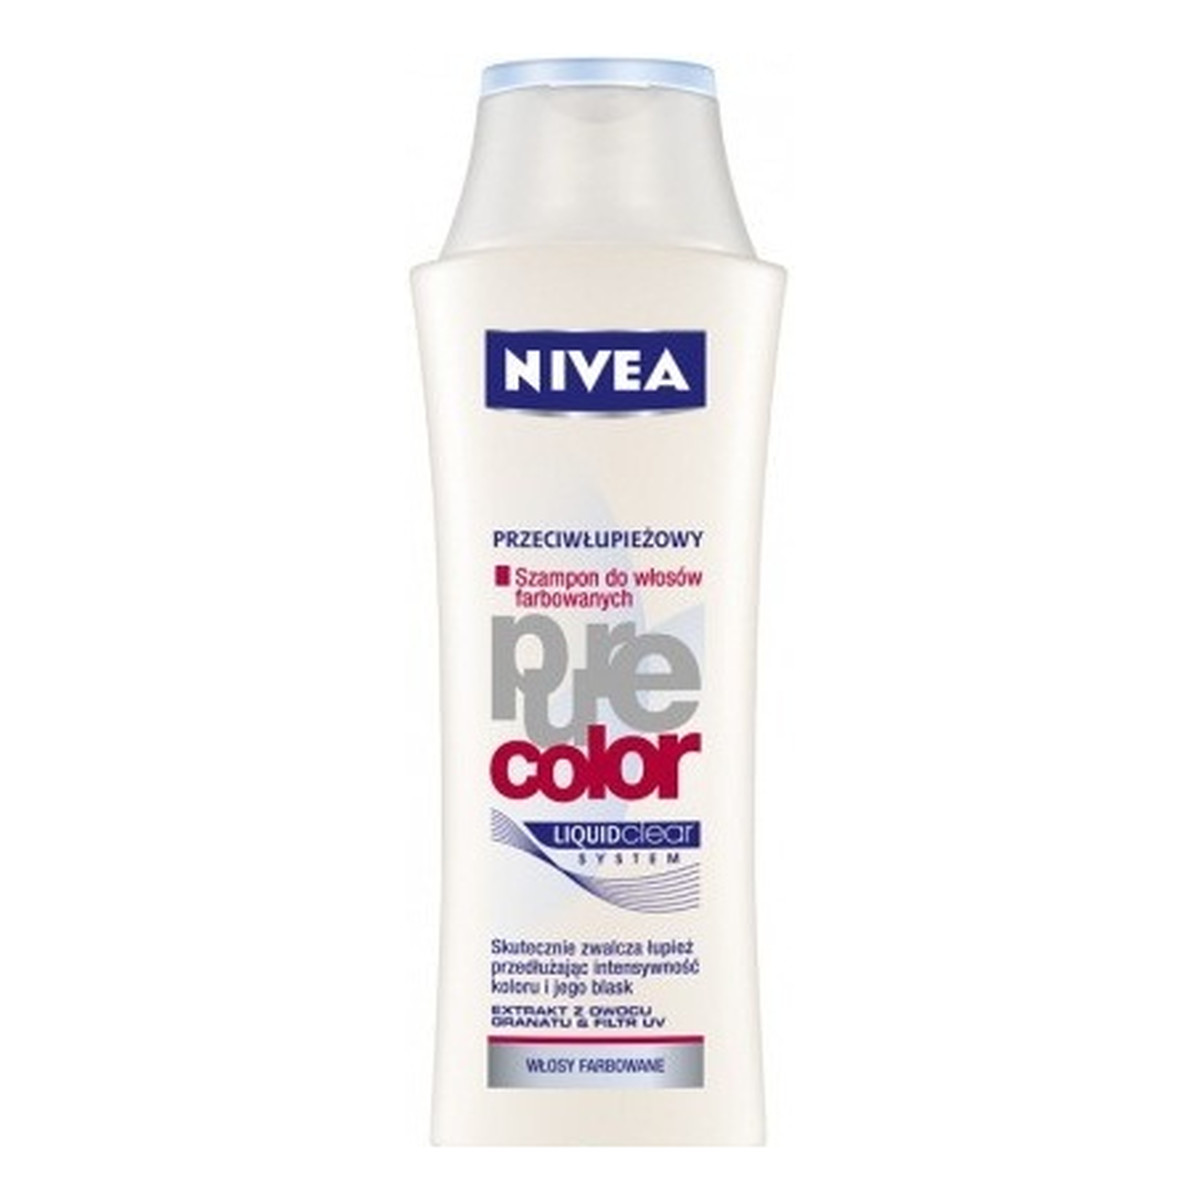 pure color przeciwłupieżowy szampon do włosów farbowanyc